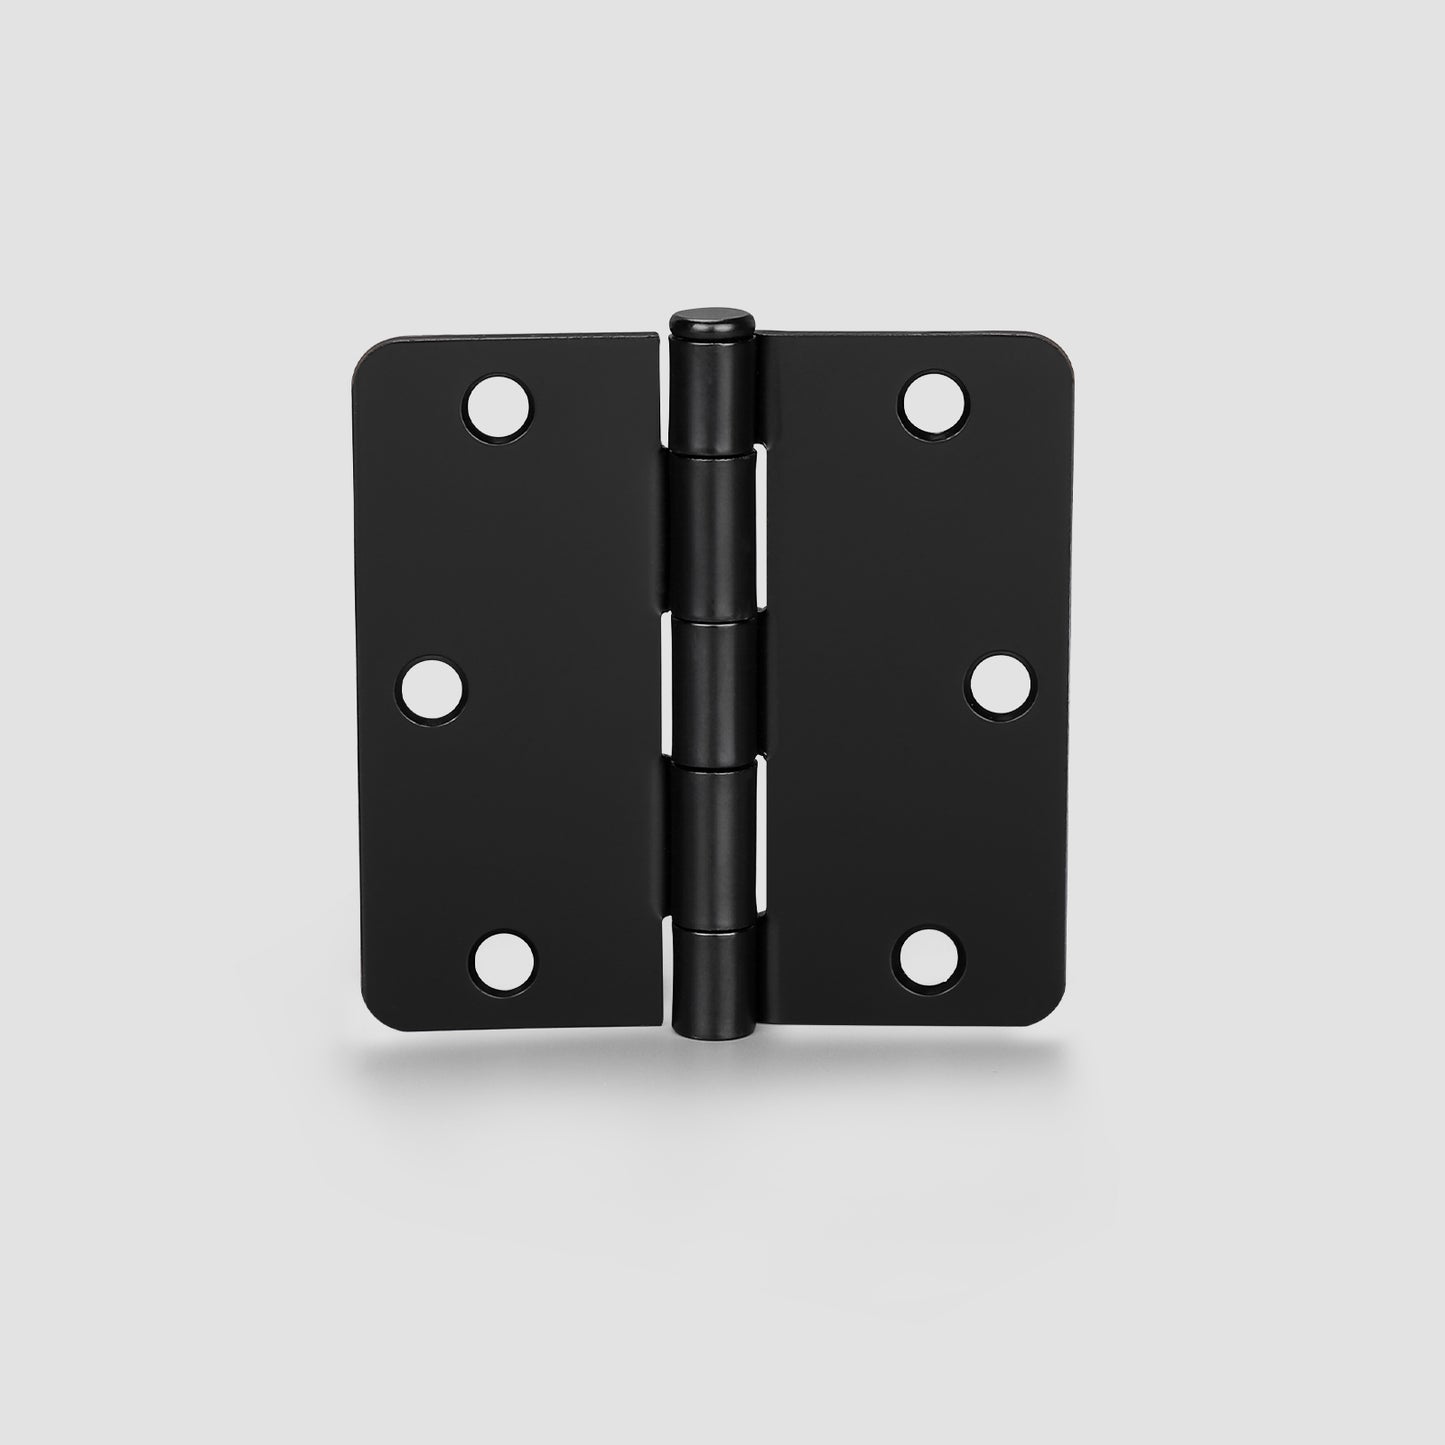 Matte Black Door Hinges - 3.5" x 3.5" inch - 1/4" Radius/ 5/8" Radius/ Square Corners - DH3535BK